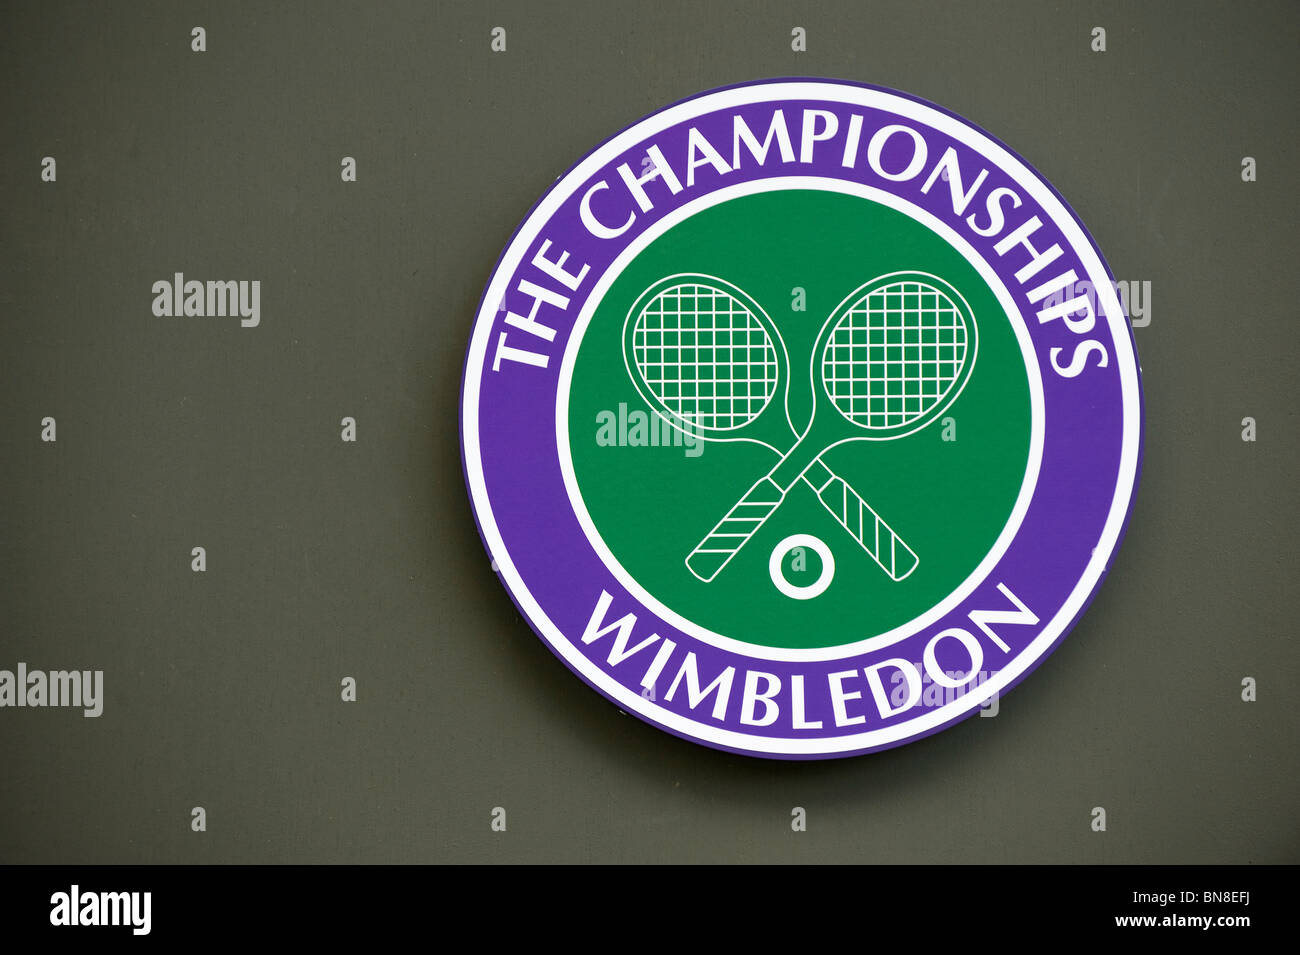 Wimbledon logo hi-res stock photography and images - Alamy